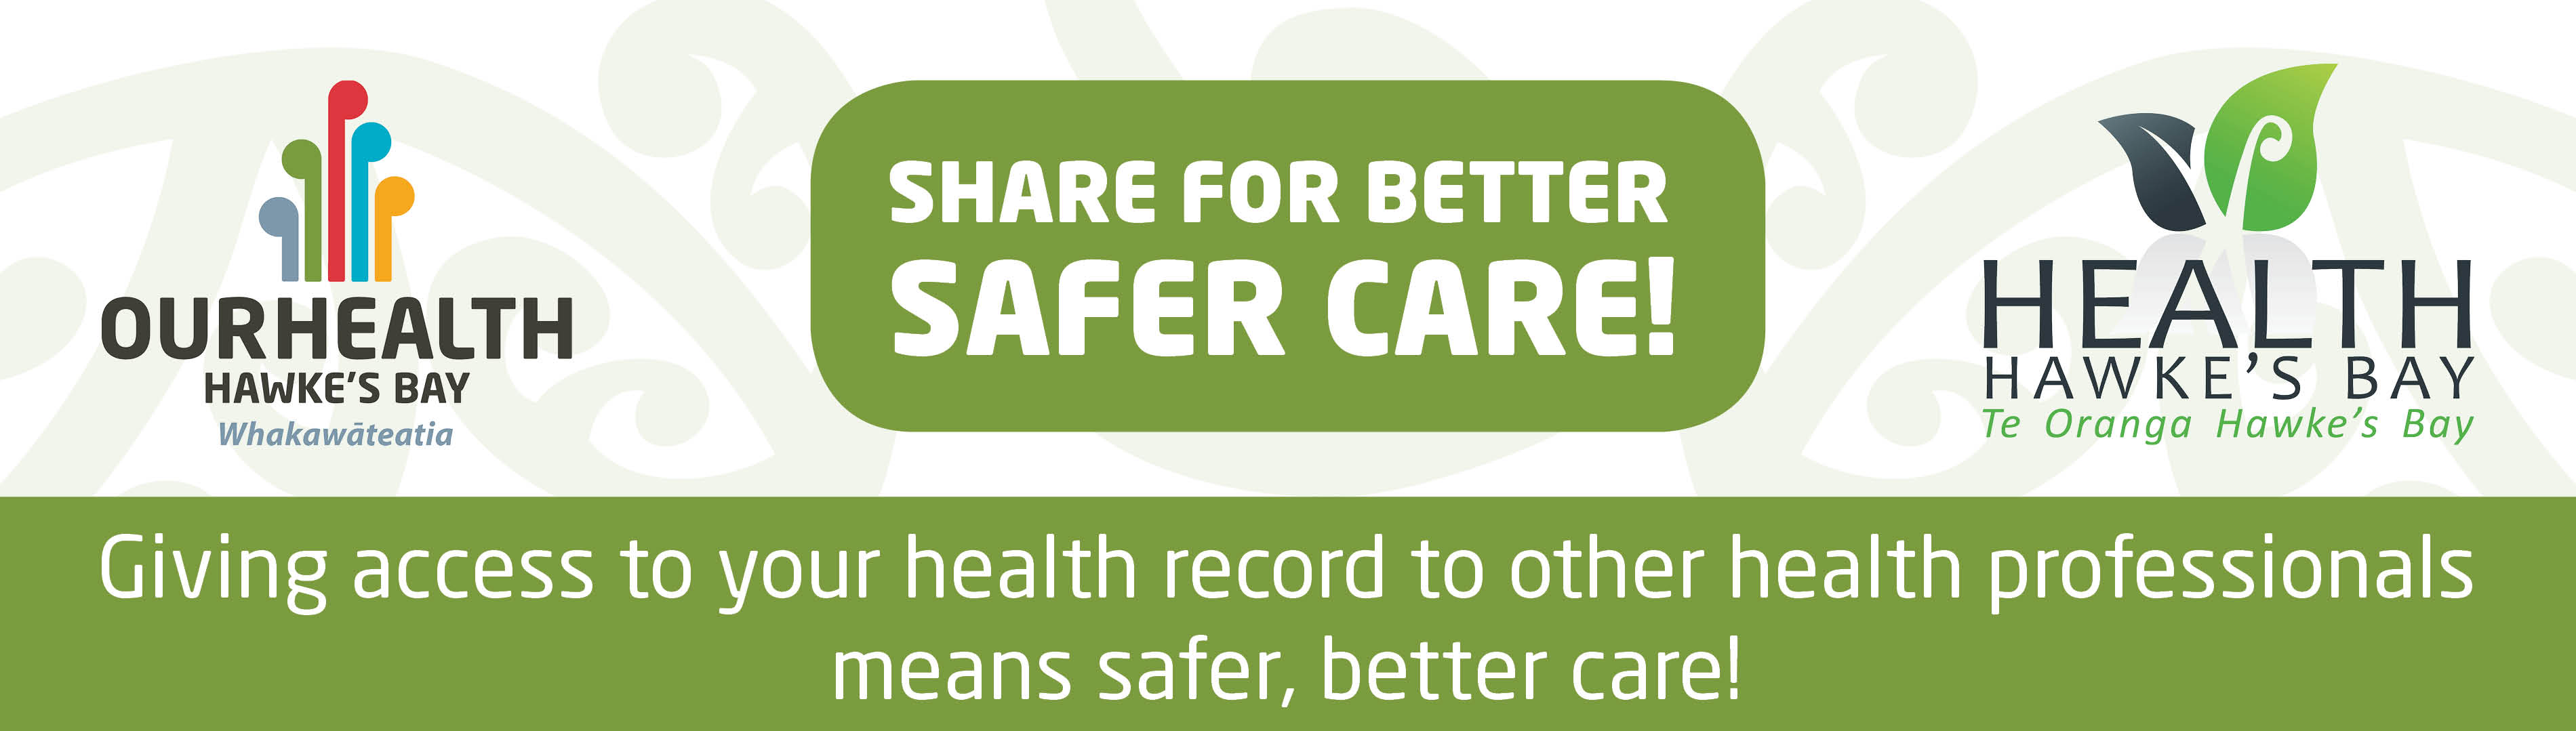 Share-for-better-safer-care-header.jpg